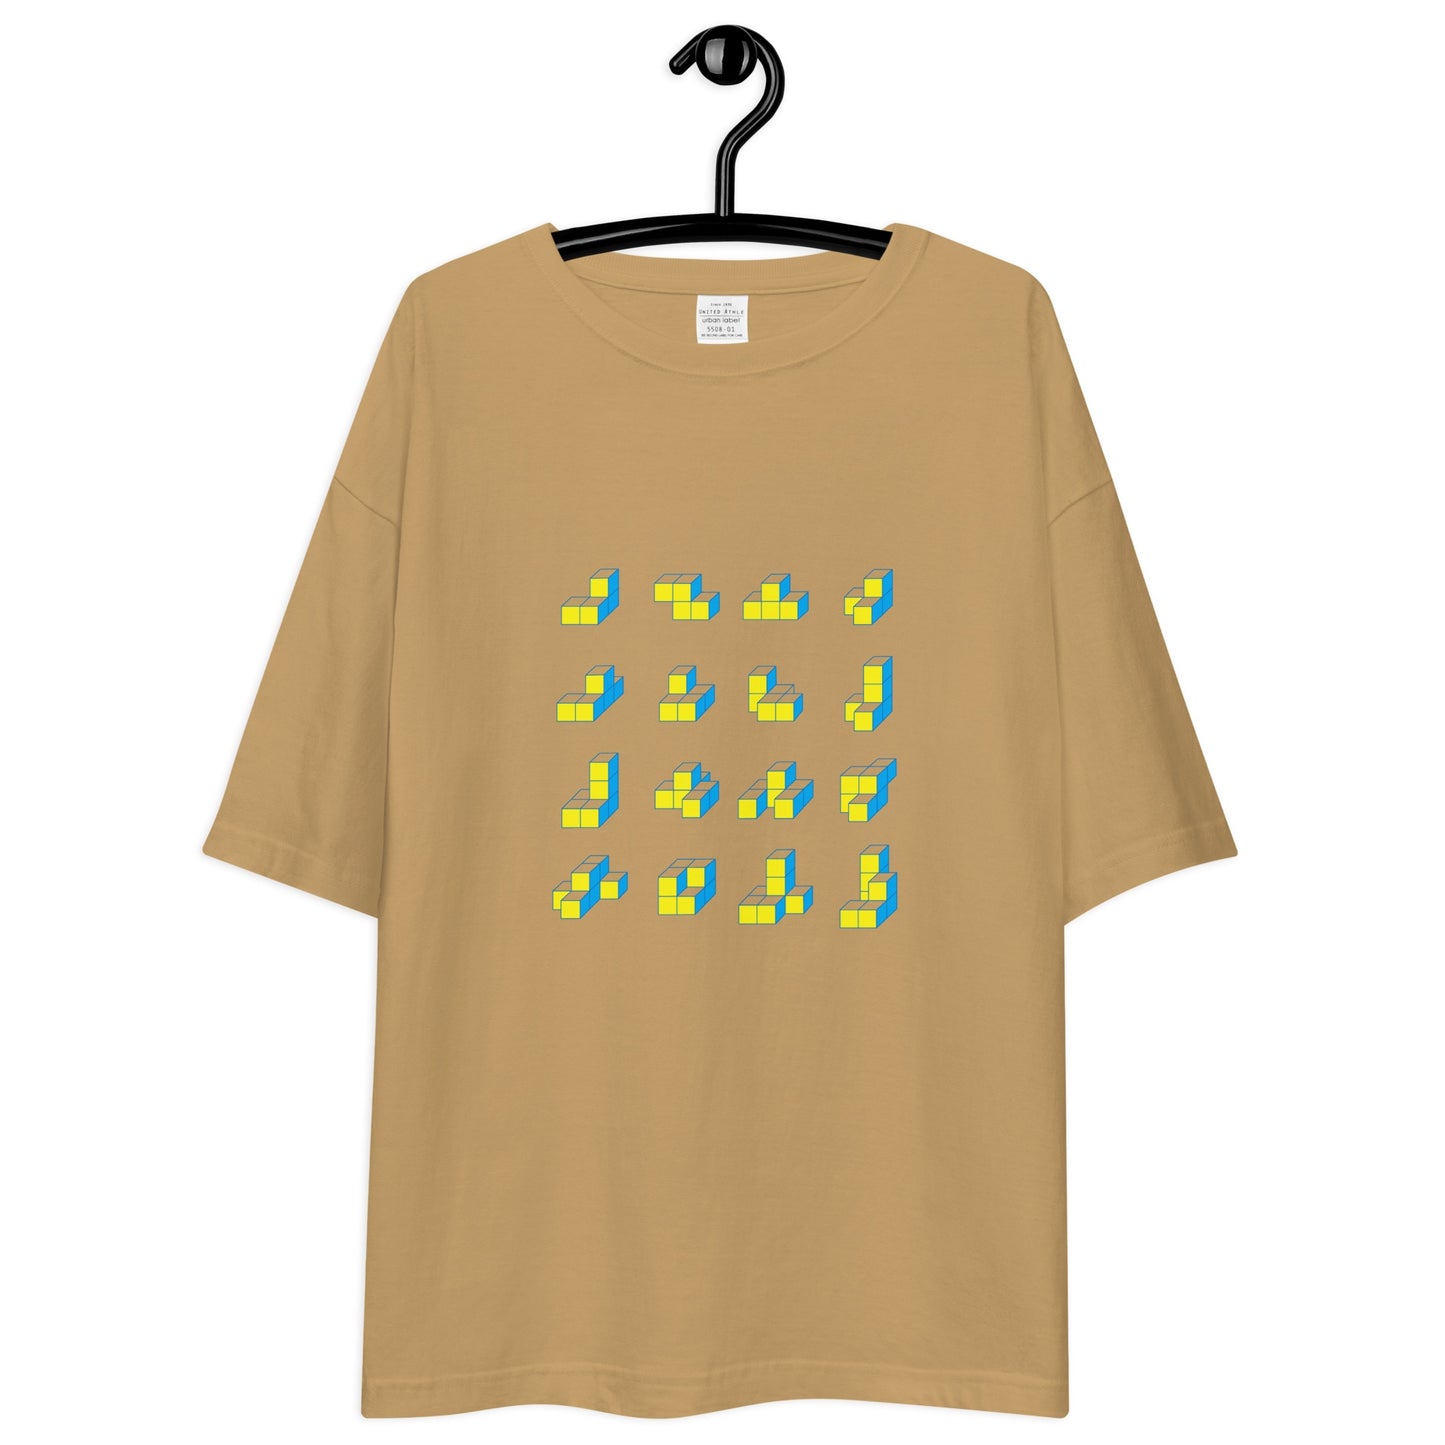 キューブ 黄×青 ビッグシルエットTシャツ [ライトカラー] サンドカーキ S 02